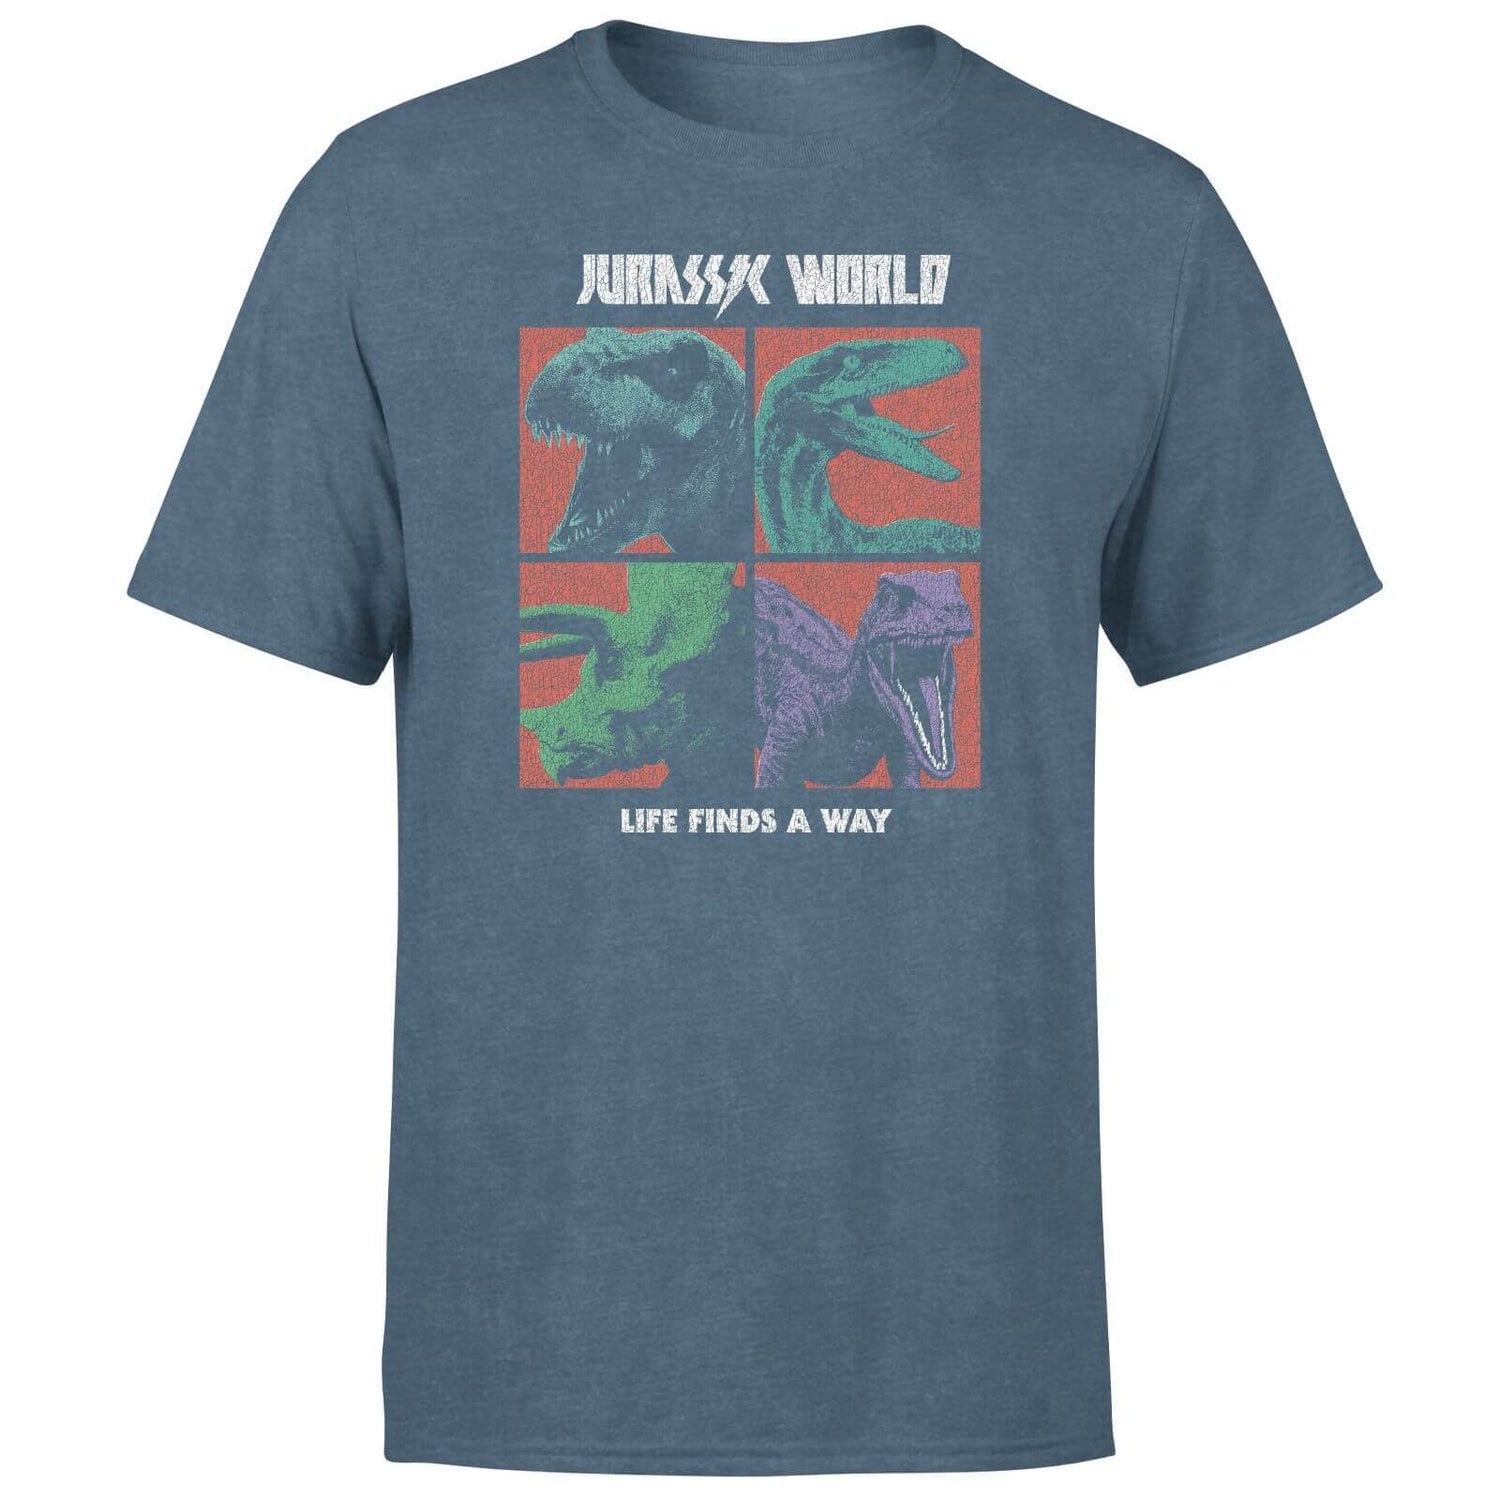 Jurassic Park World Four Colour Faces Men's T-Shirt - Navy Acid Wash